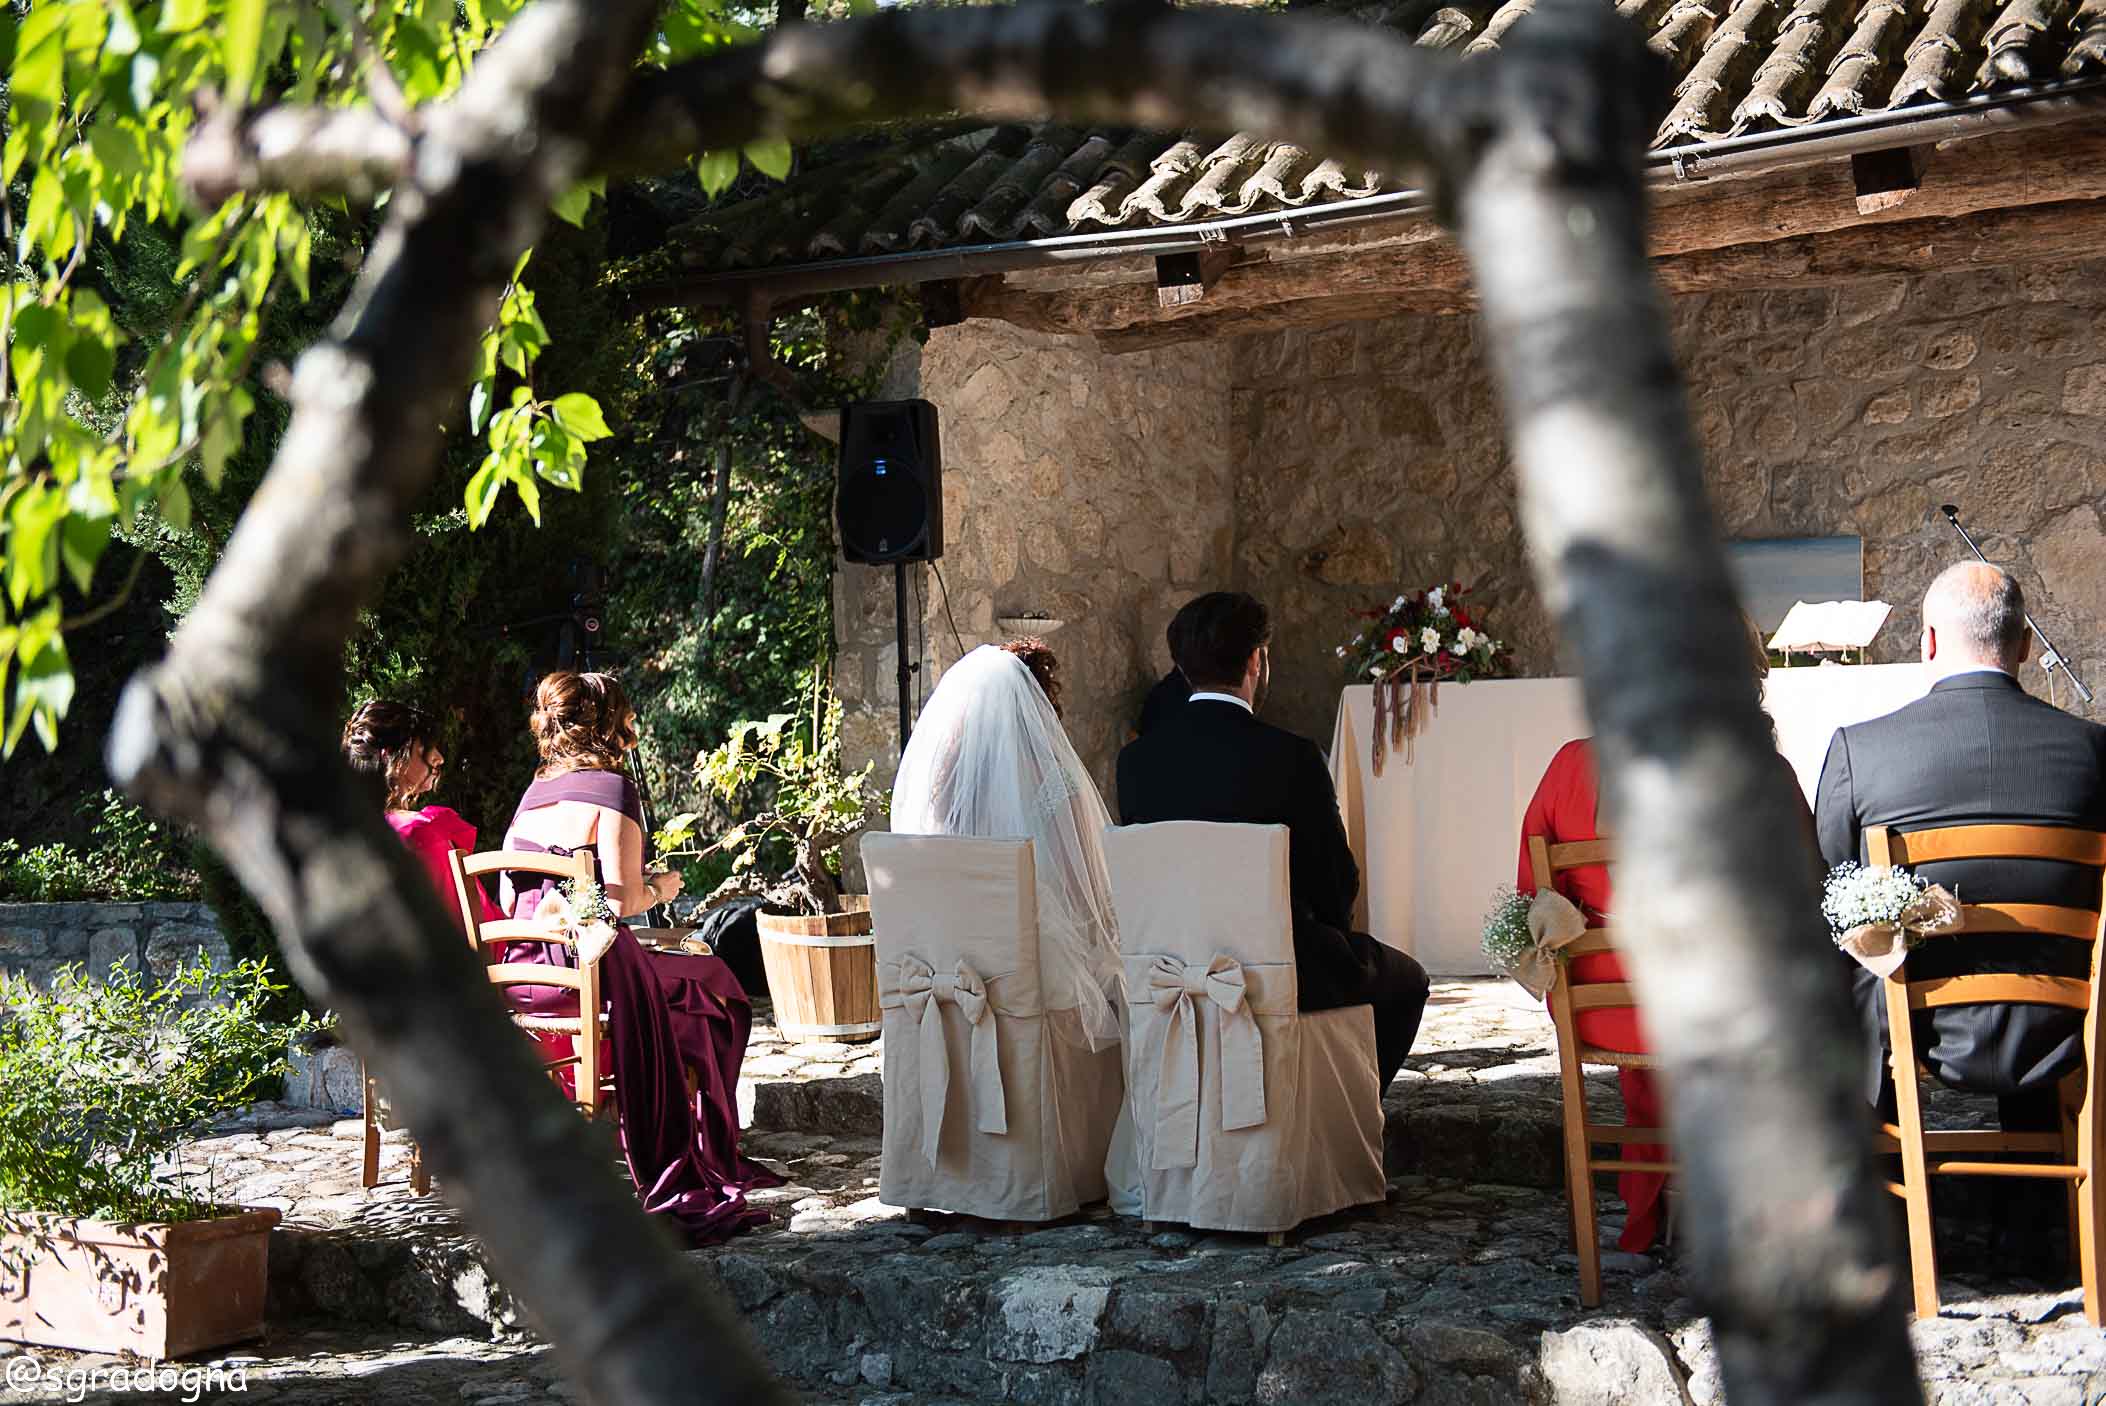 Miriam e Vittorio si sono promessi amore eterno davanti all’altare nel nostro giardino